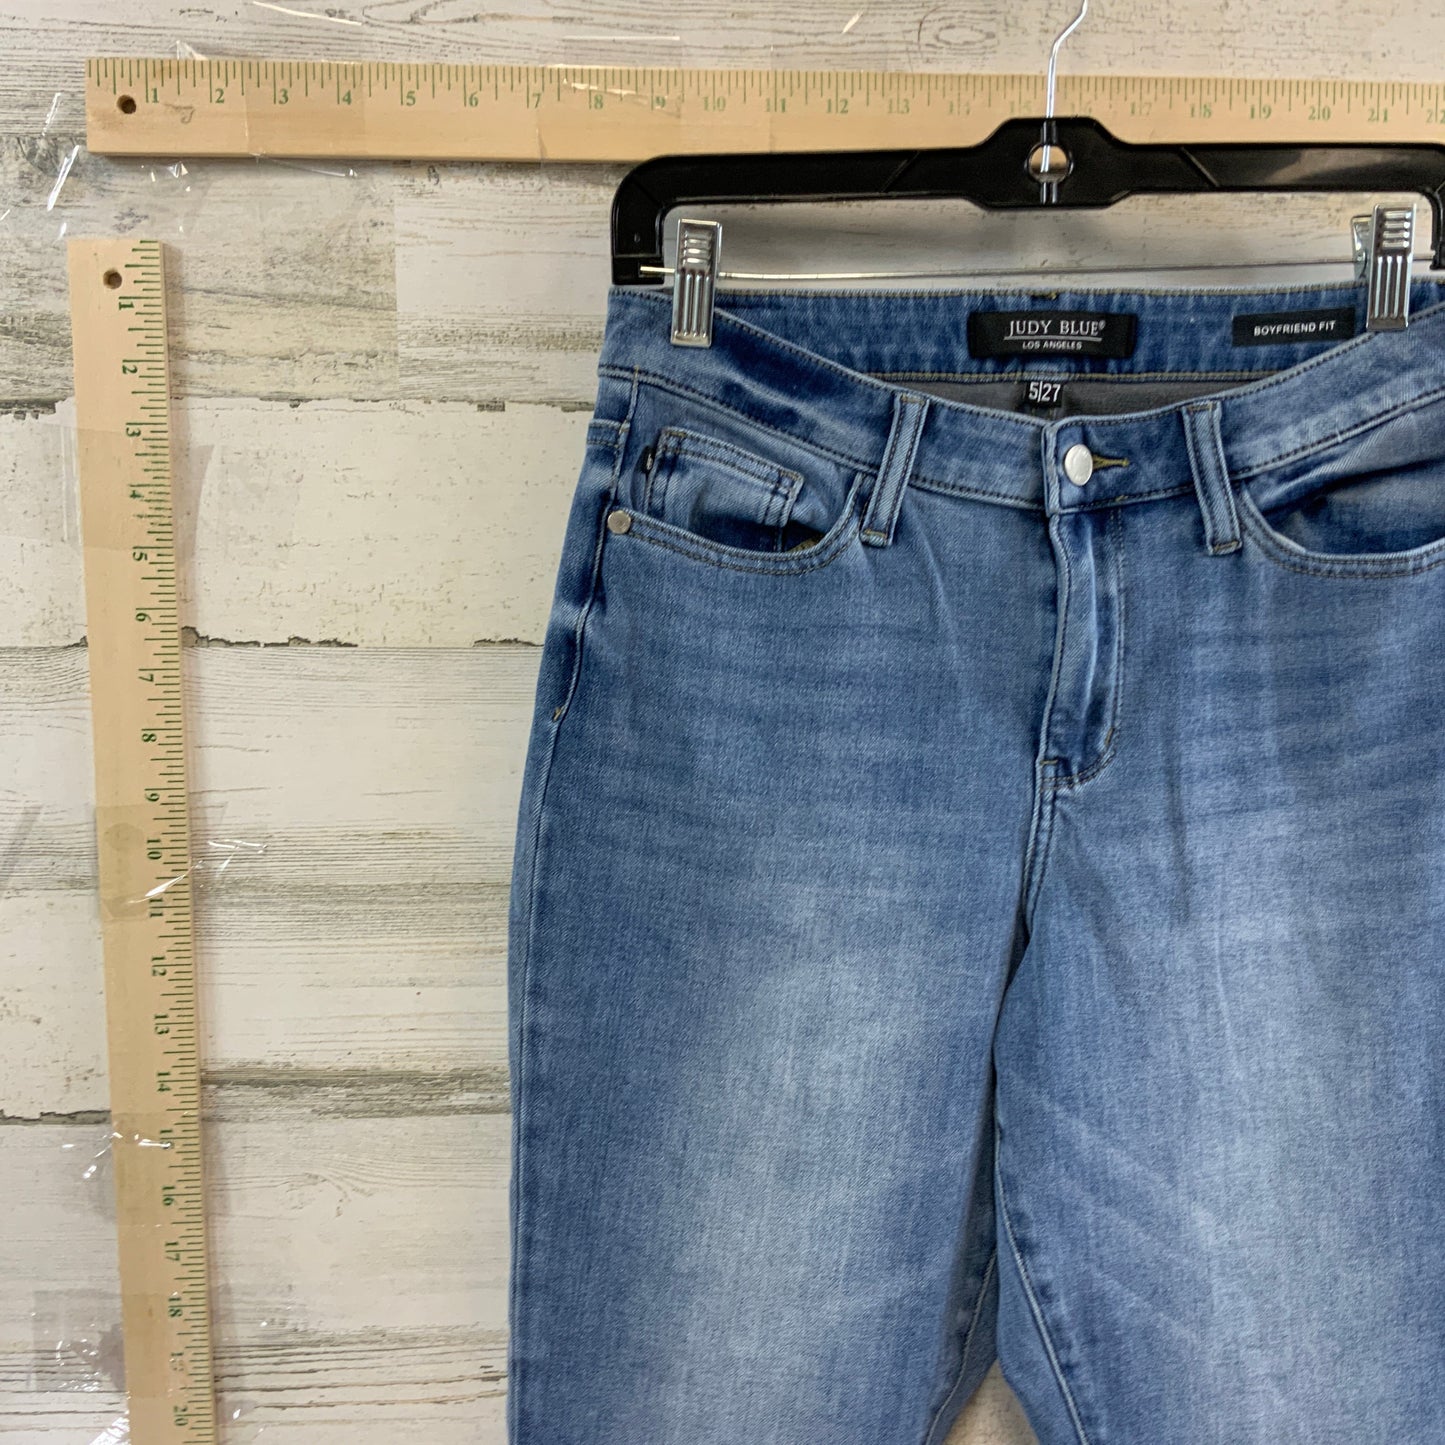 Jeans Boyfriend By Judy Blue  Size: 4